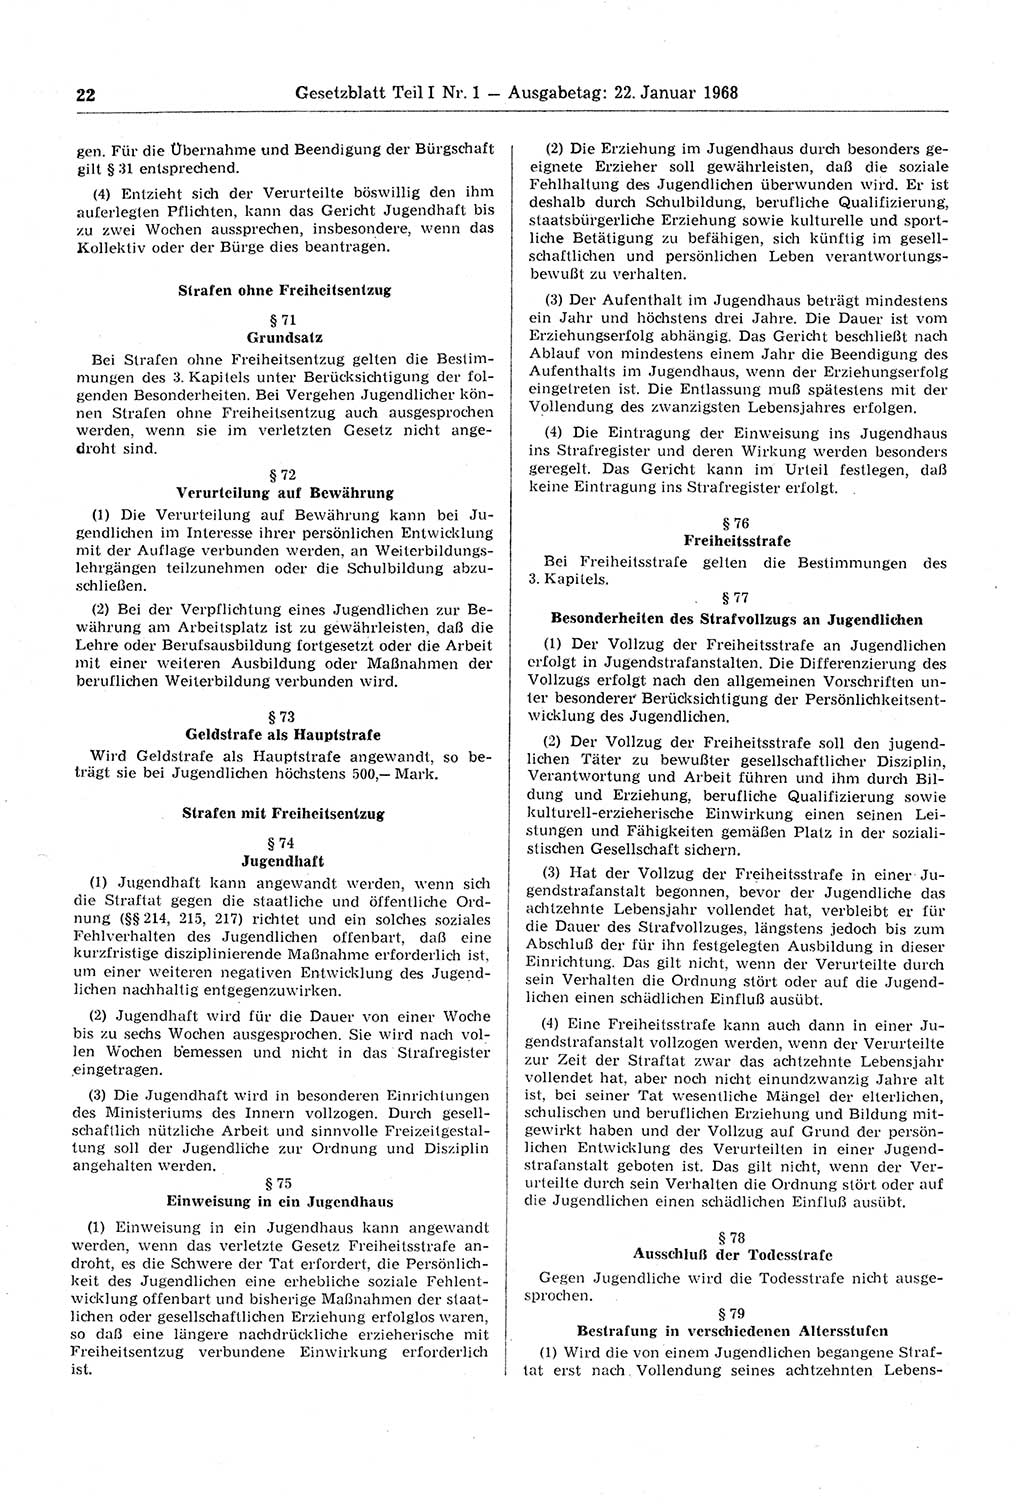 Gesetzblatt (GBl.) der Deutschen Demokratischen Republik (DDR) Teil Ⅰ 1968, Seite 22 (GBl. DDR Ⅰ 1968, S. 22)